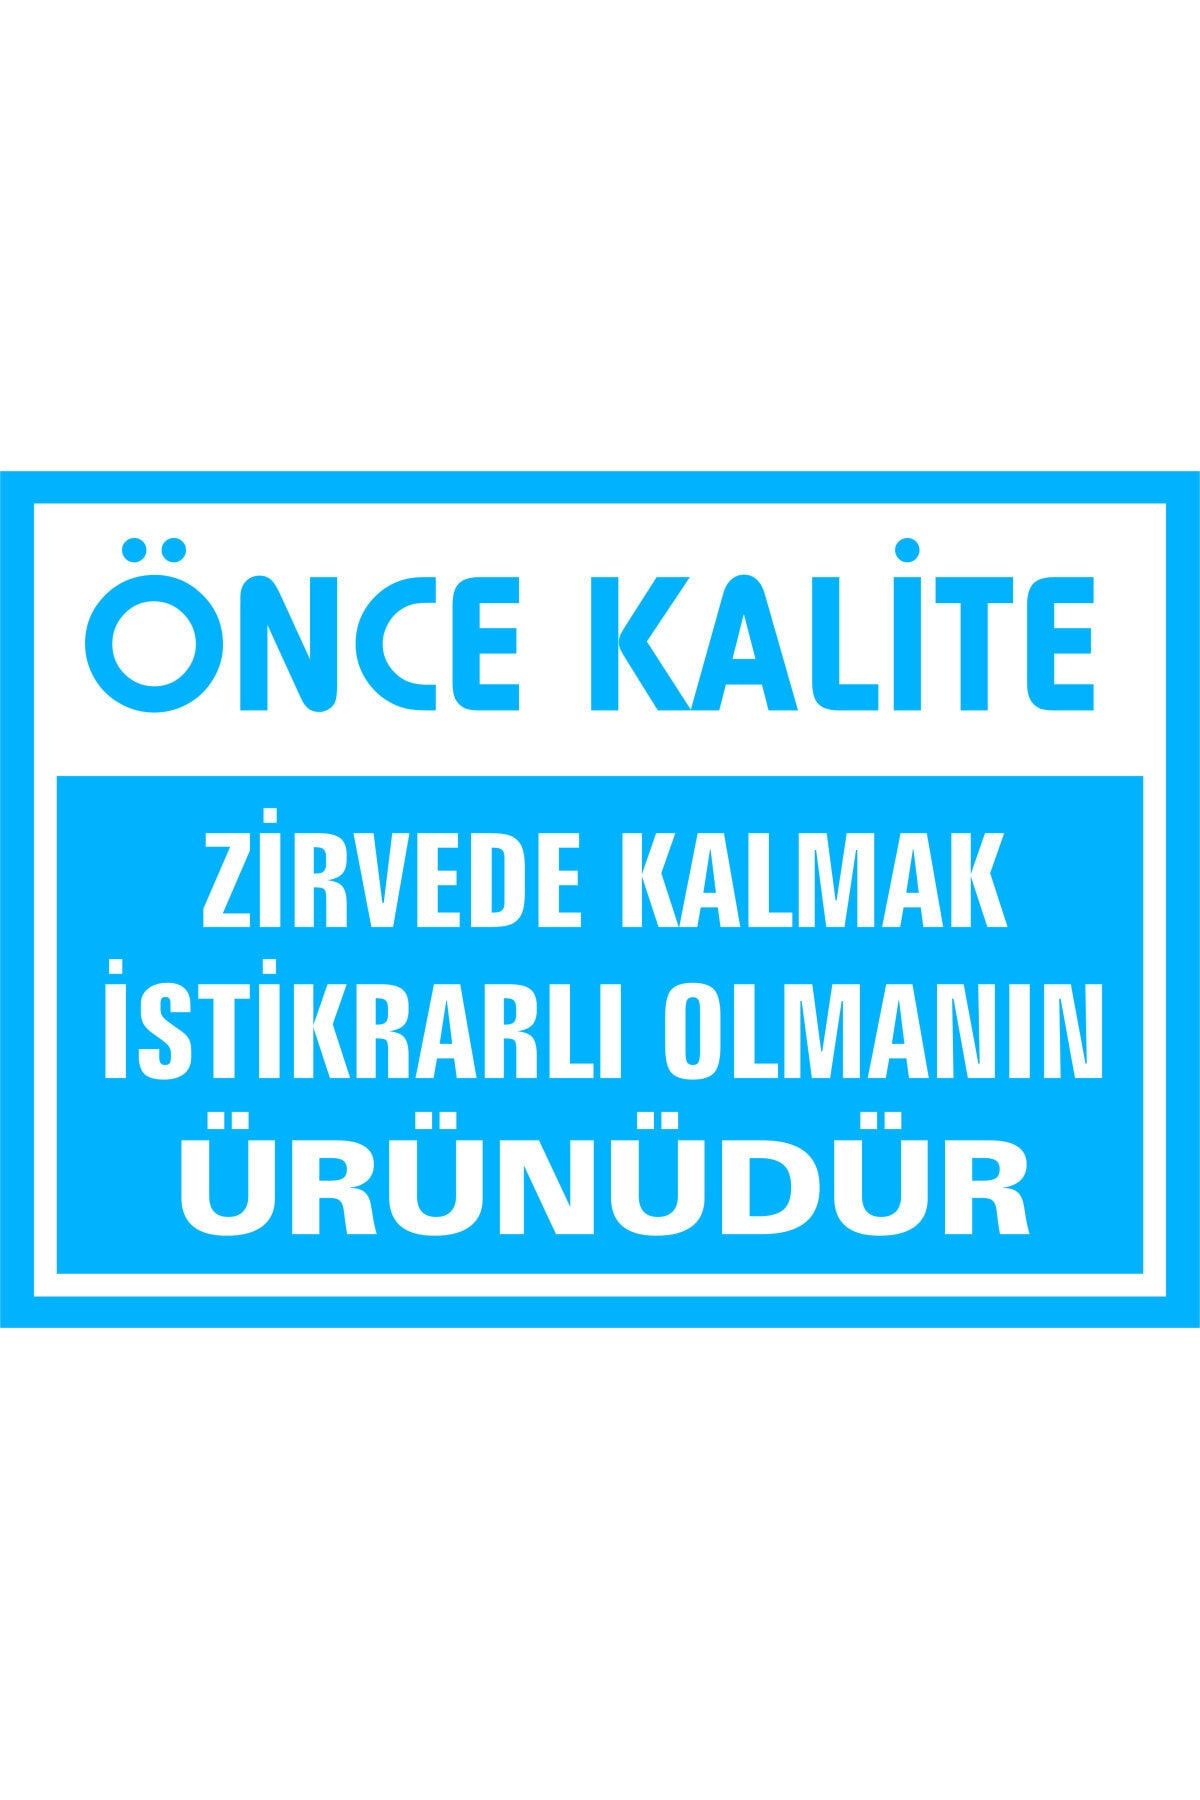 İzmir Serigrafi Önce Kalite Zirvede Kalmak Istikrarlı Olmanın Ürünüdür Kendinden Yapışkanlı Etiket 17,5 X 25 Cm